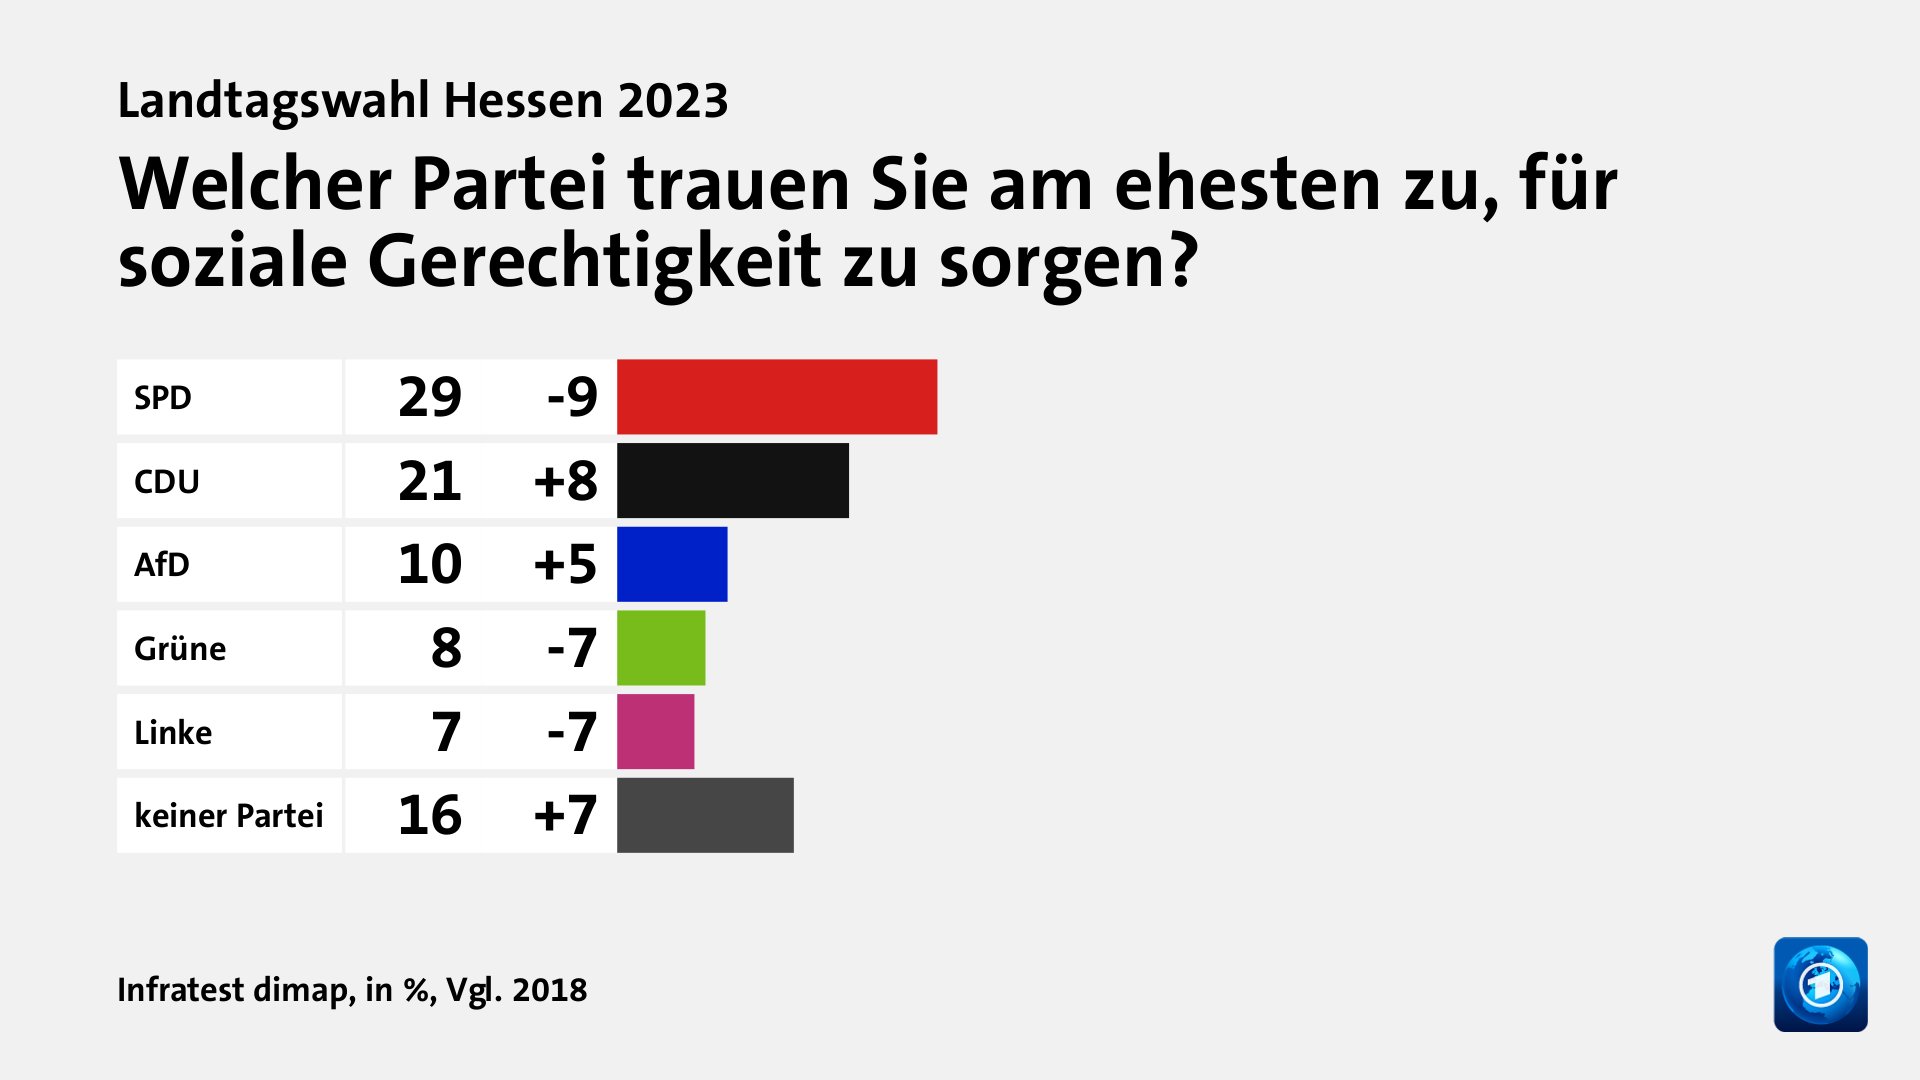 Welcher Partei trauen Sie am ehesten zu, für soziale Gerechtigkeit zu sorgen?, in %, Vgl. 2018: SPD 29, CDU 21, AfD 10, Grüne 8, Linke 7, keiner Partei 16, Quelle: Infratest dimap